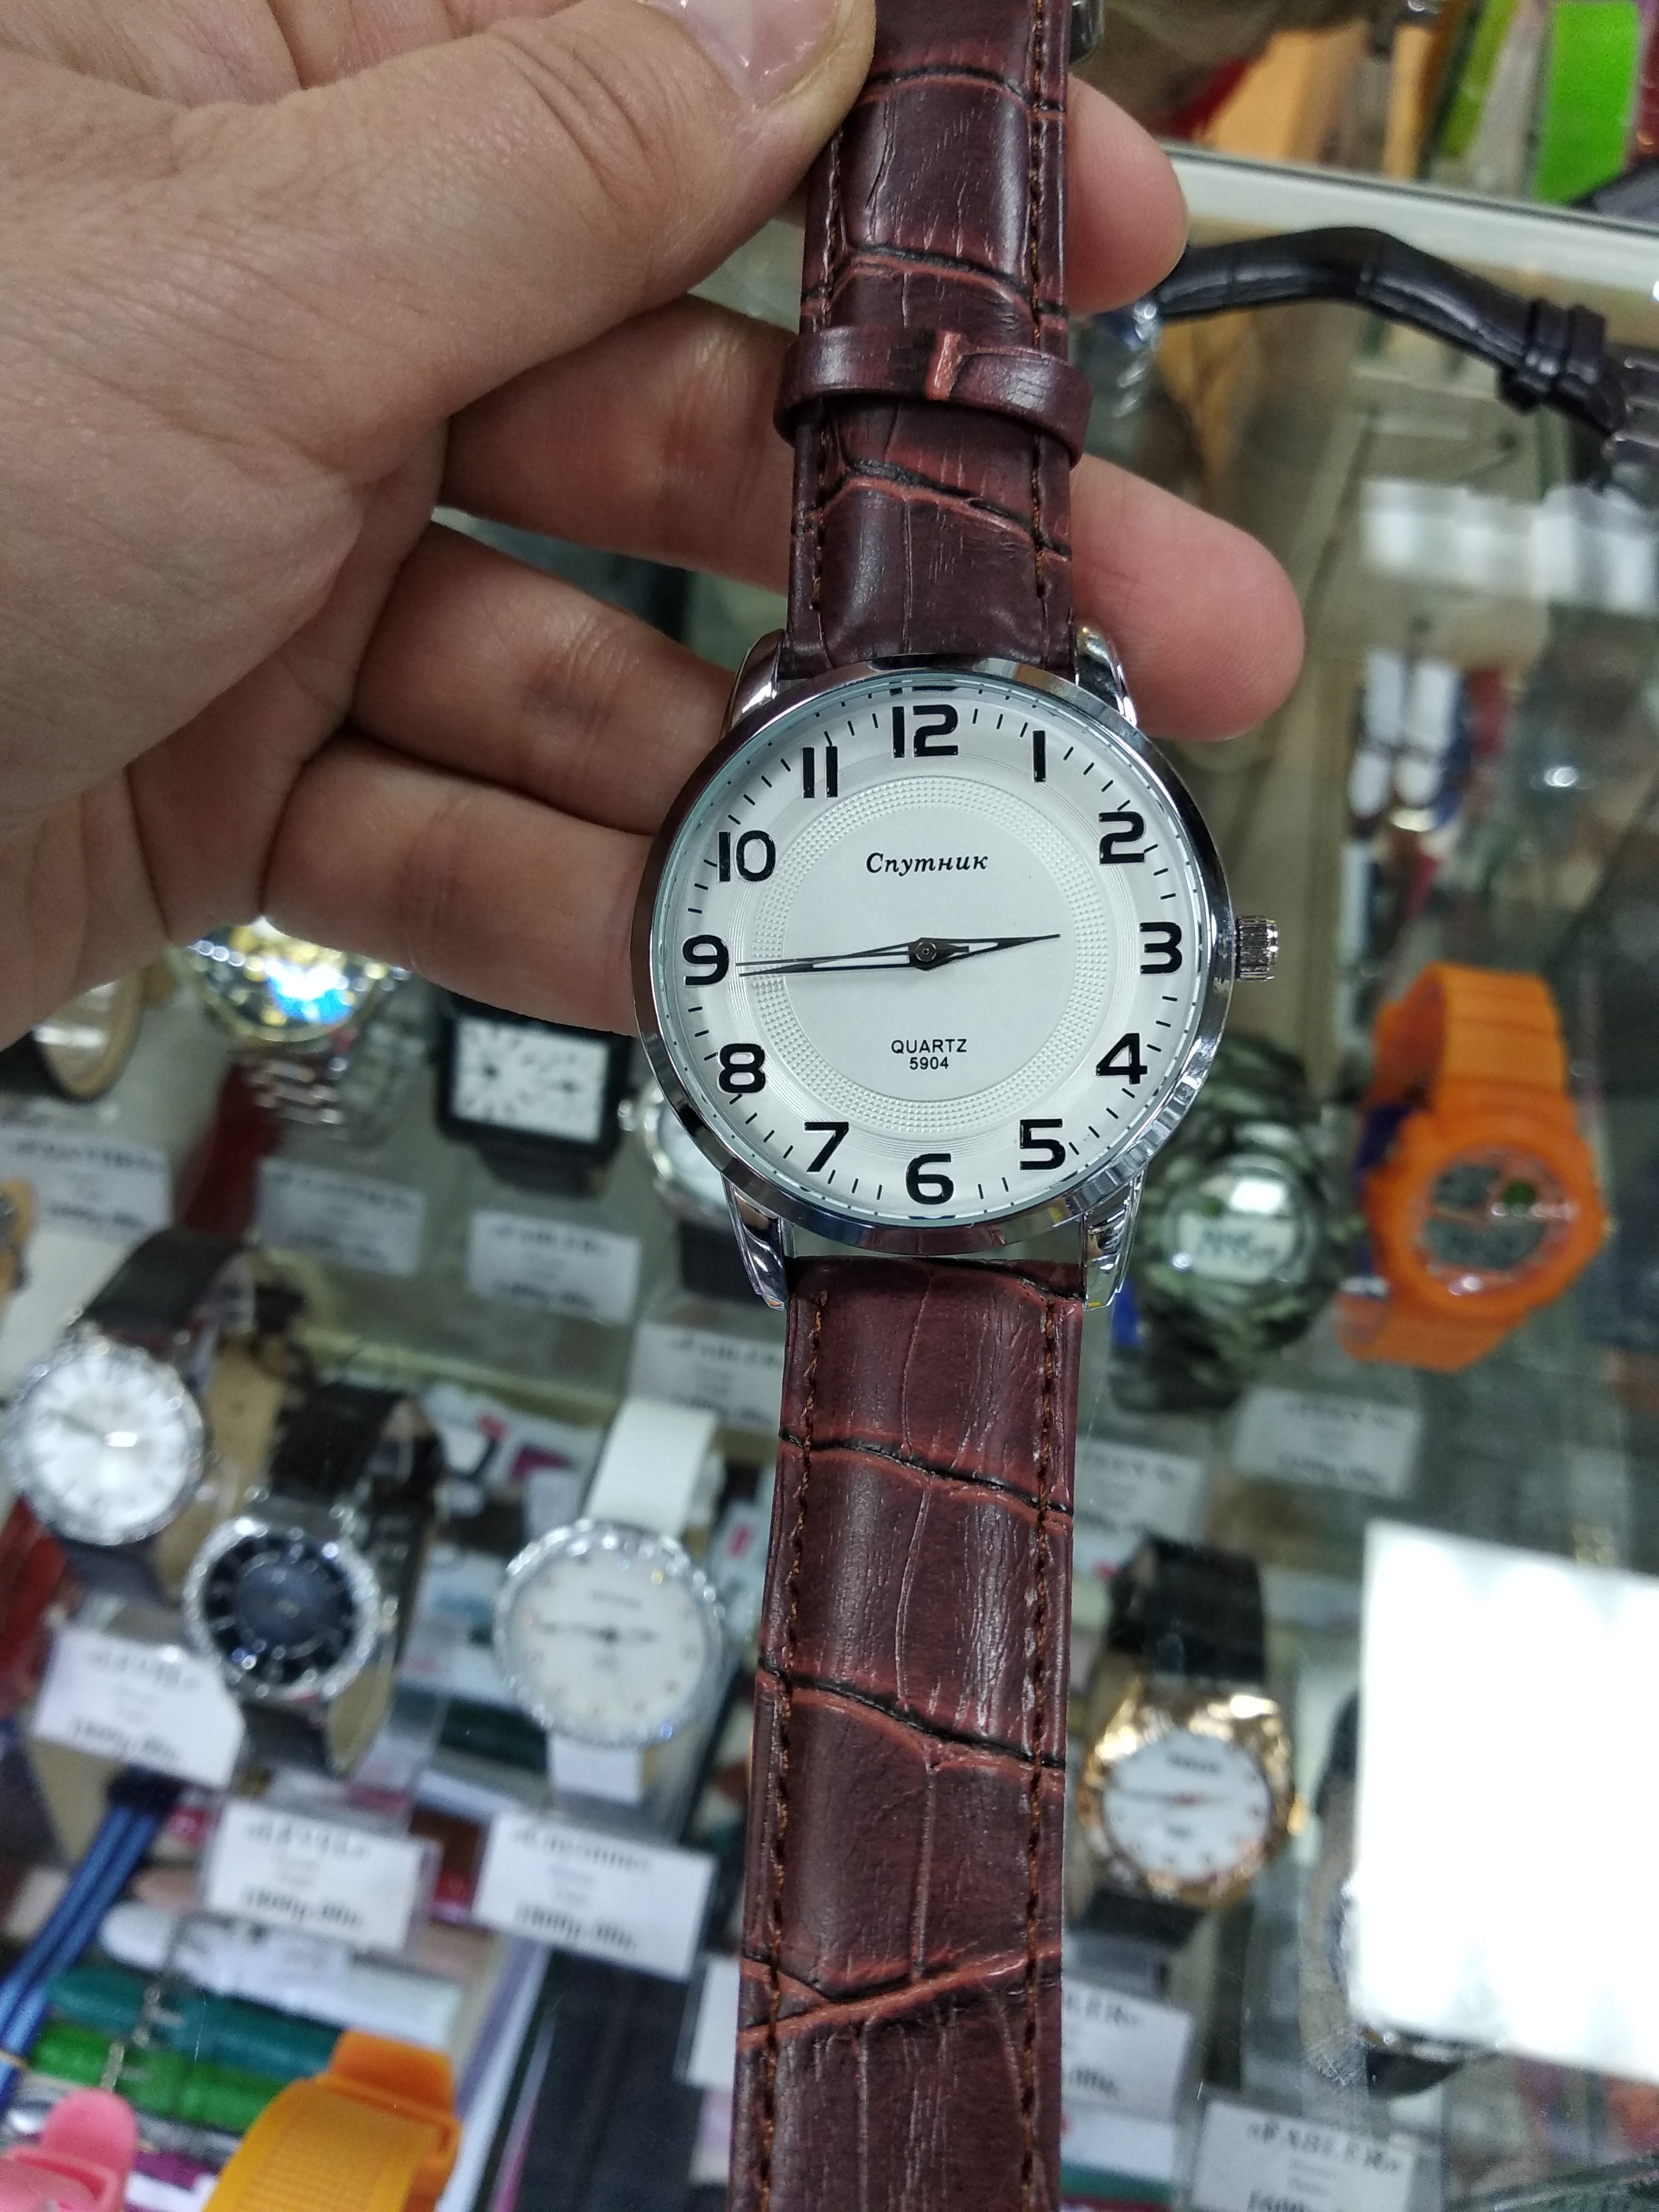 Авито новосибирск часы. Часы Новосибирск. Купить часы в Новосибирске. Адреса магазинов часы в Новосибирске. Ремонт наручных часов в Новосибирске адреса и цены.